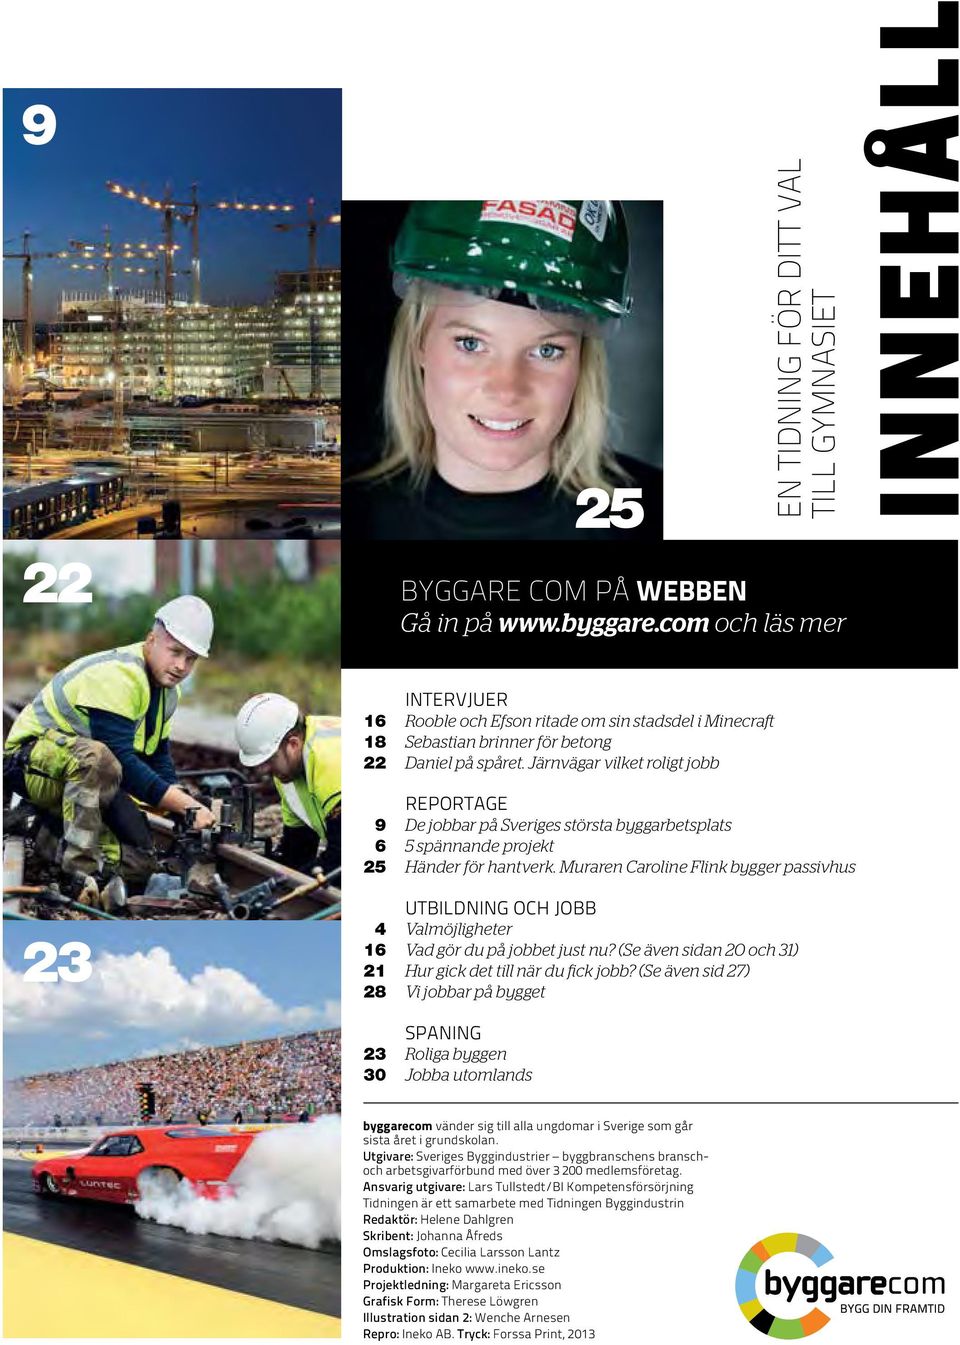 Järnvägar vilket roligt jobb reportage 9 De jobbar på Sveriges största byggarbetsplats 6 5 spännande projekt 25 Händer för hantverk.